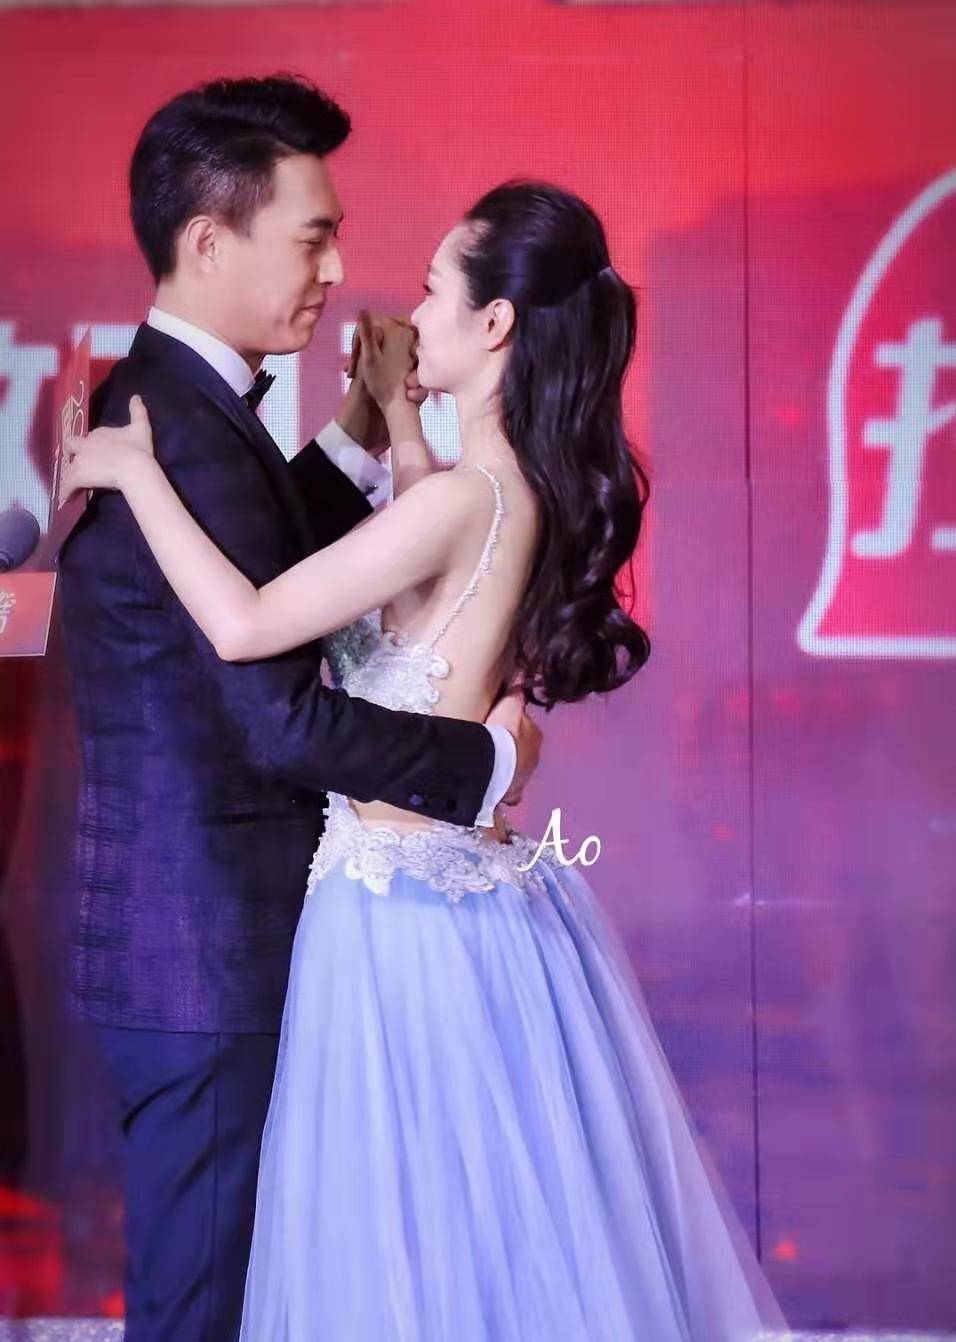 靳东和宋轶跳交际舞,看清他手放女生背后的位置,我没眼花吧?